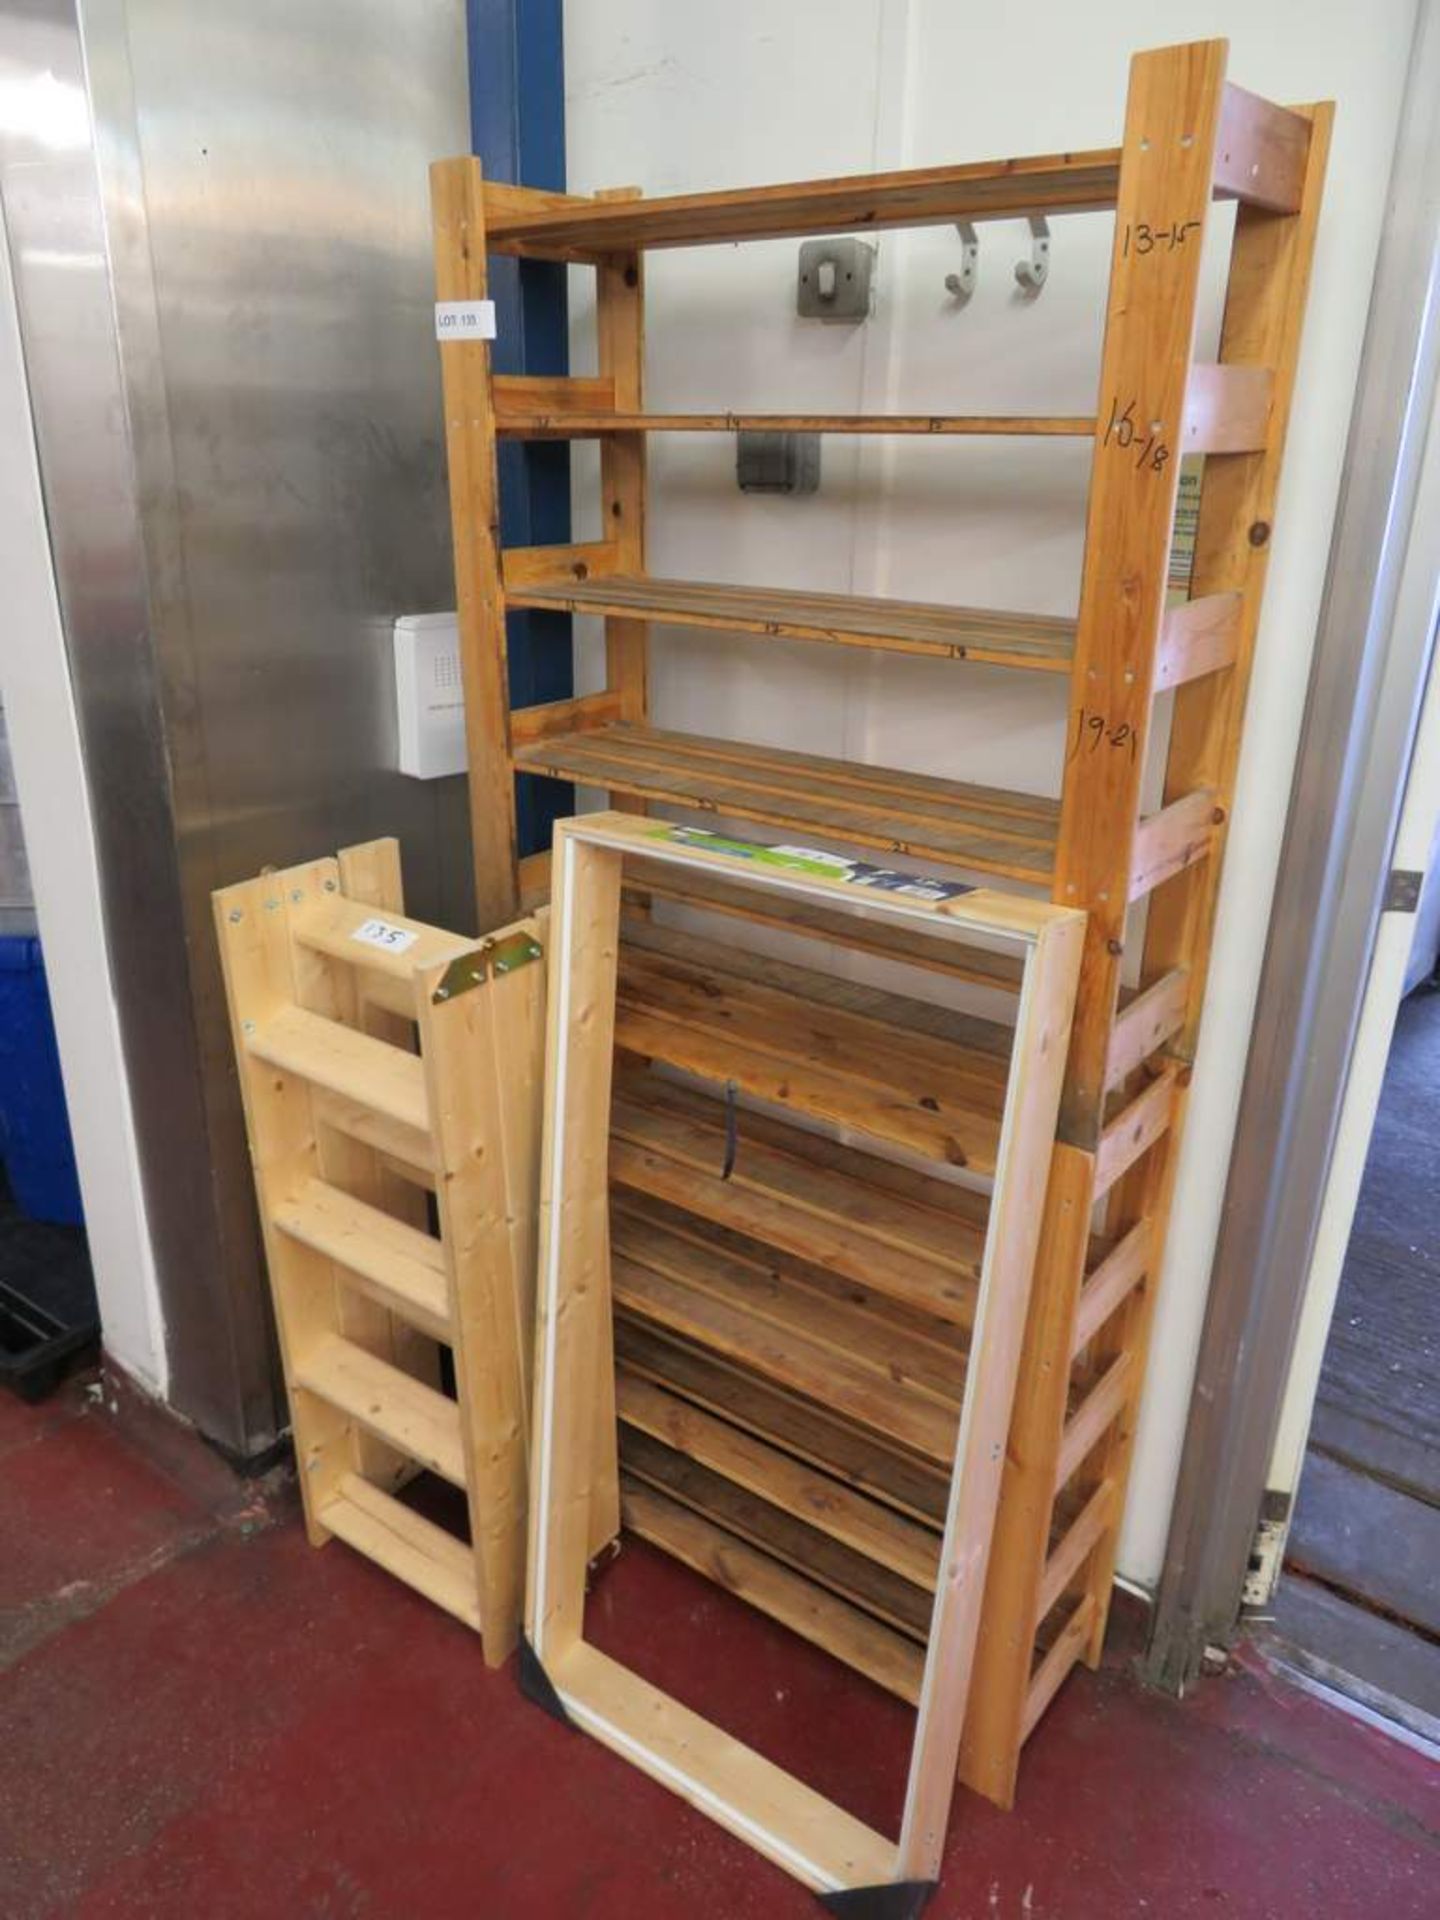 Abru wooden loft ladder 1.2m Max height and 2 wooden storage racks.